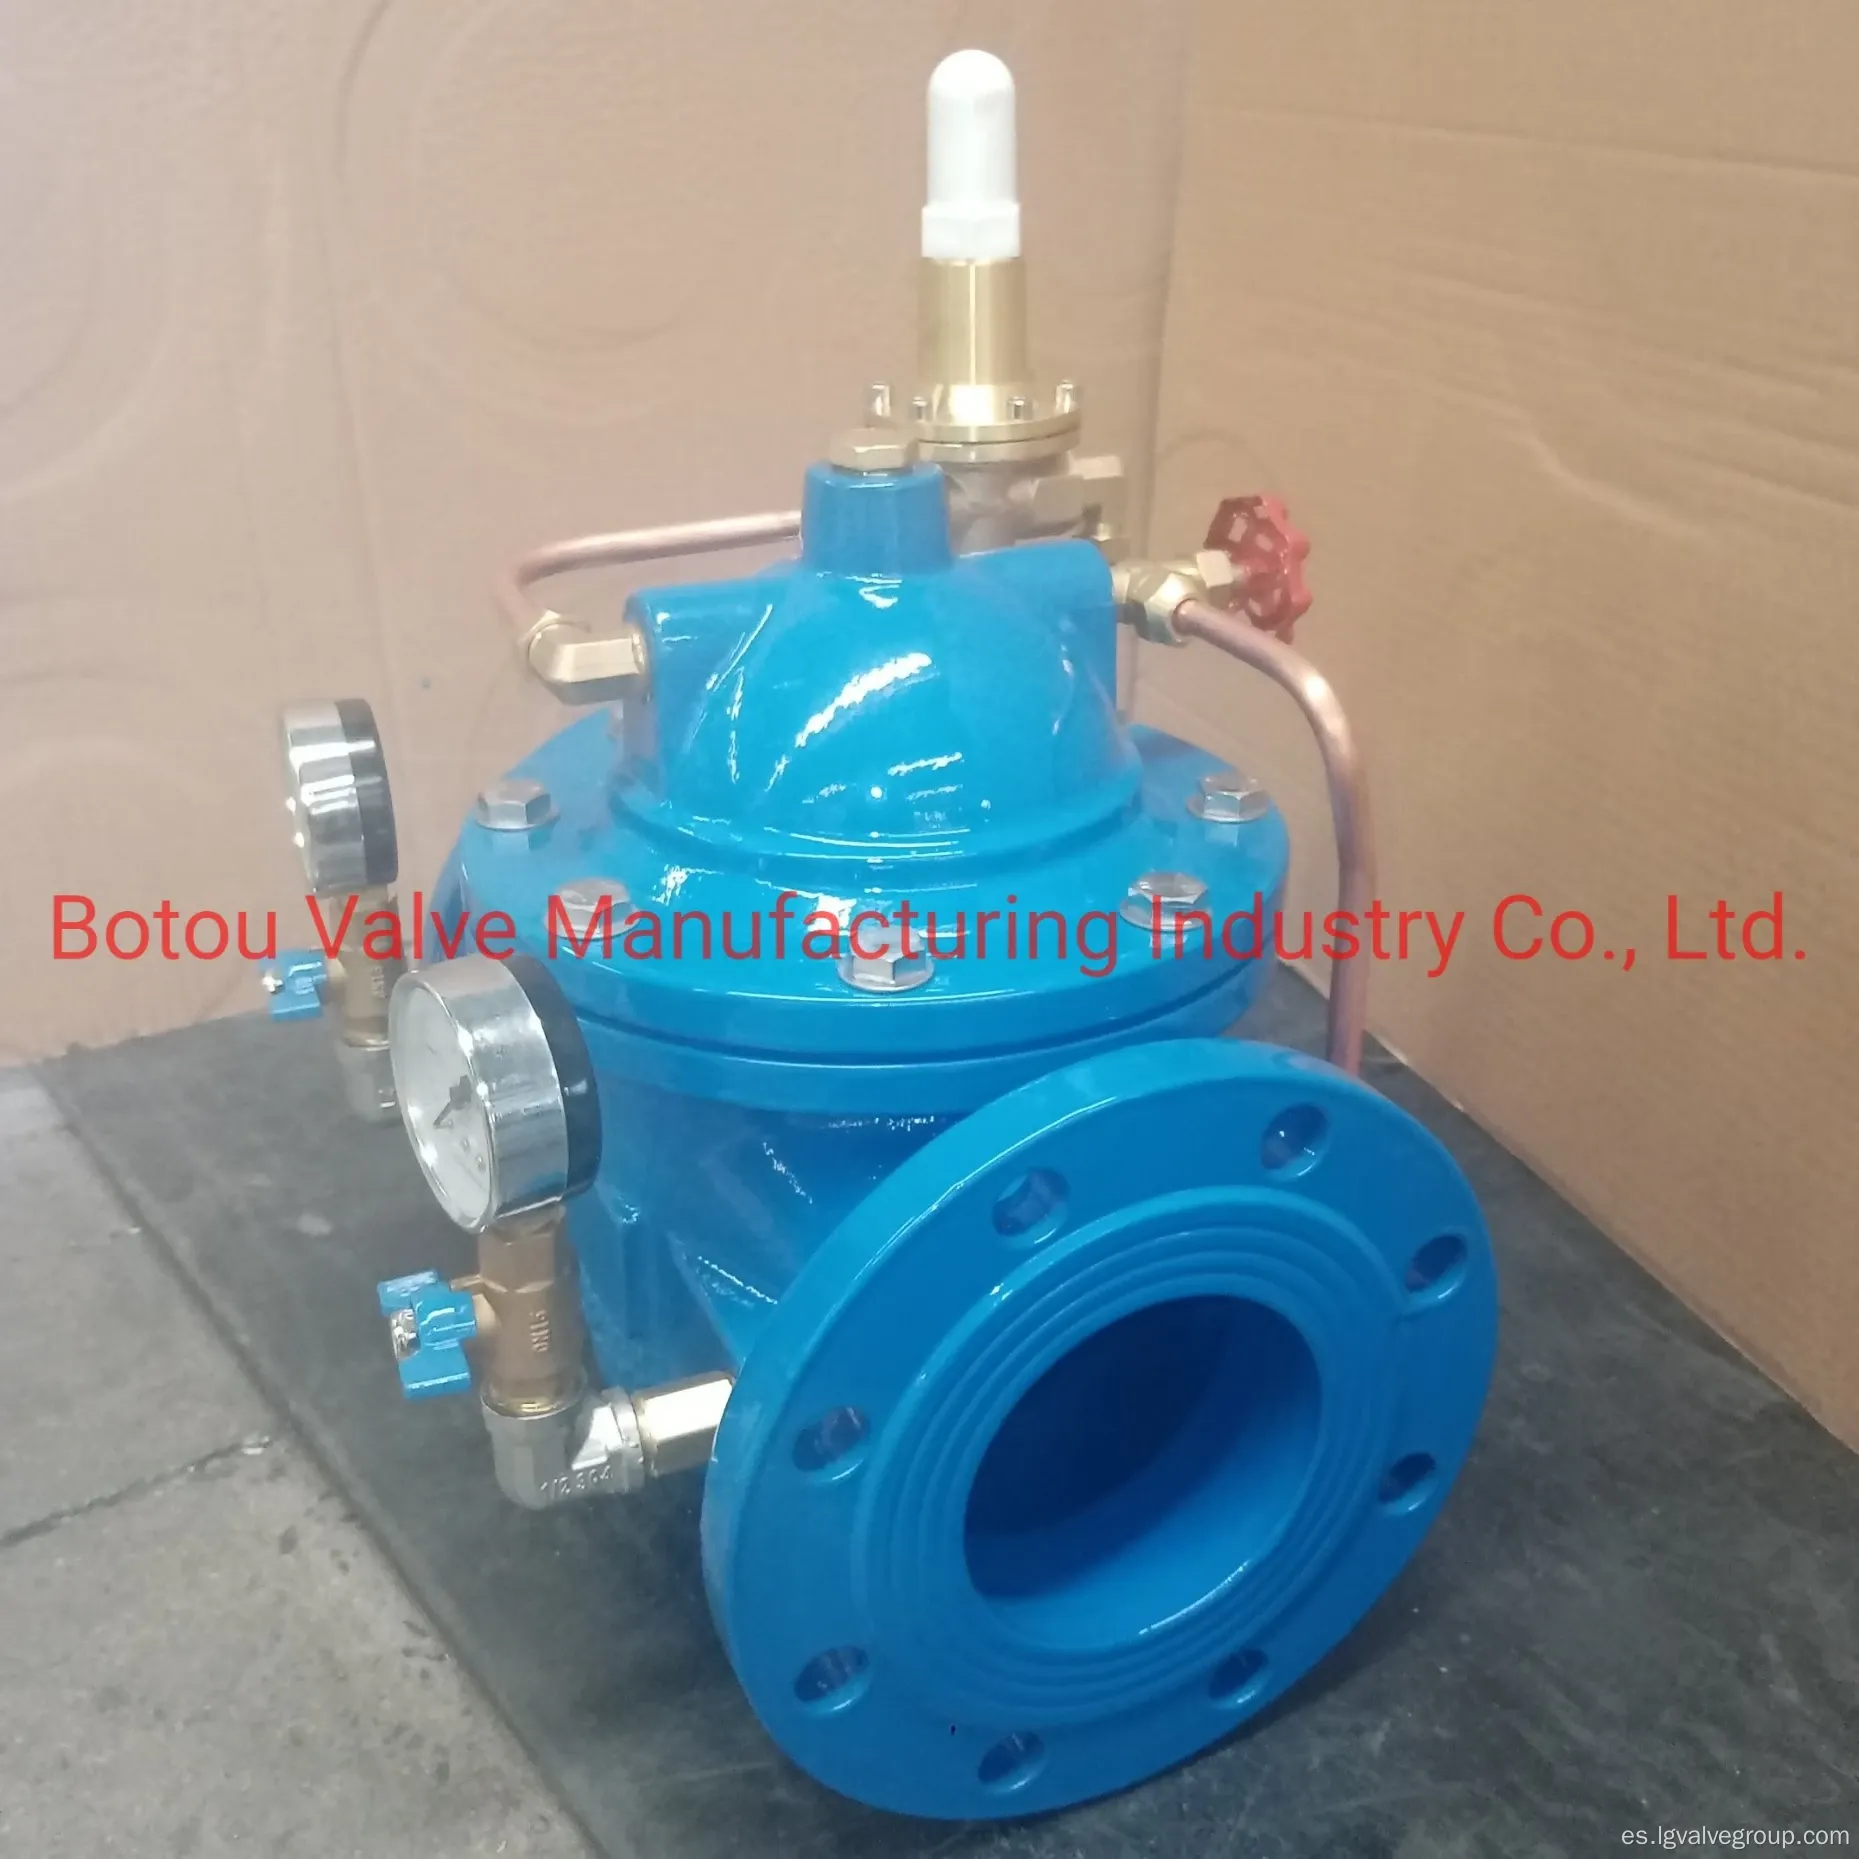 Sistema de suministro de agua 200x Válvula reductora de presión